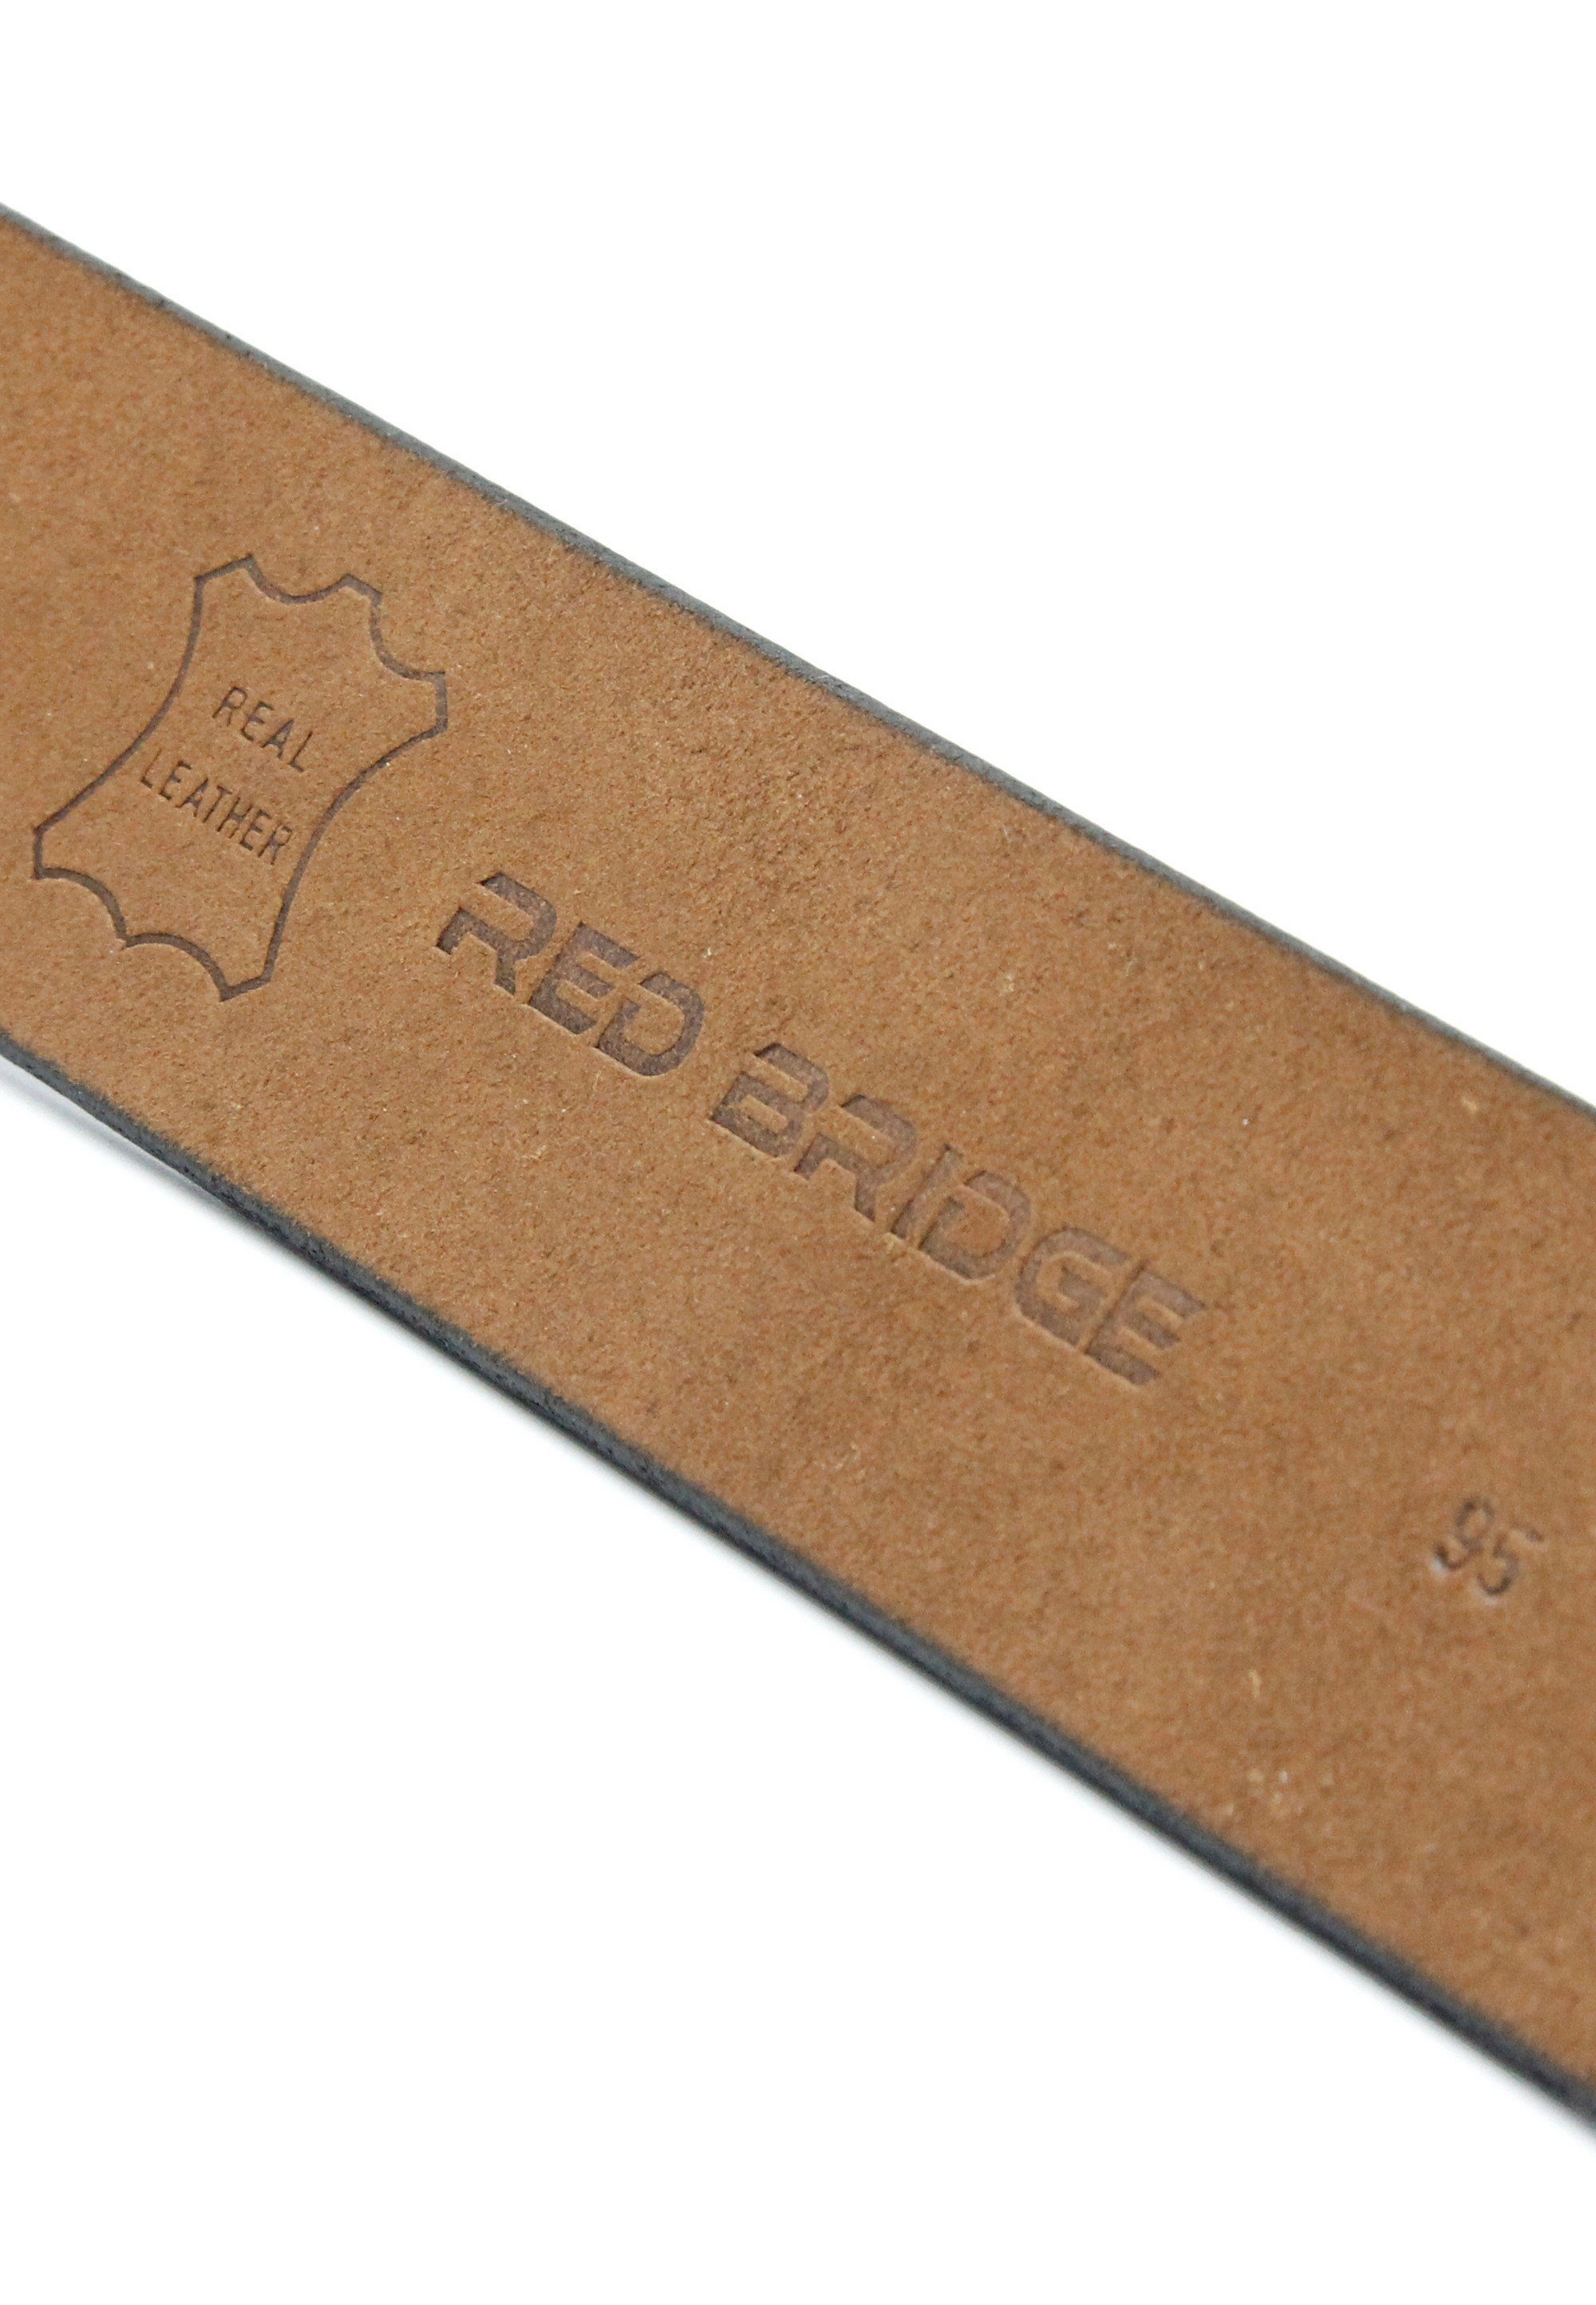 RedBridge schlichtem in Design Ledergürtel braun Frisco